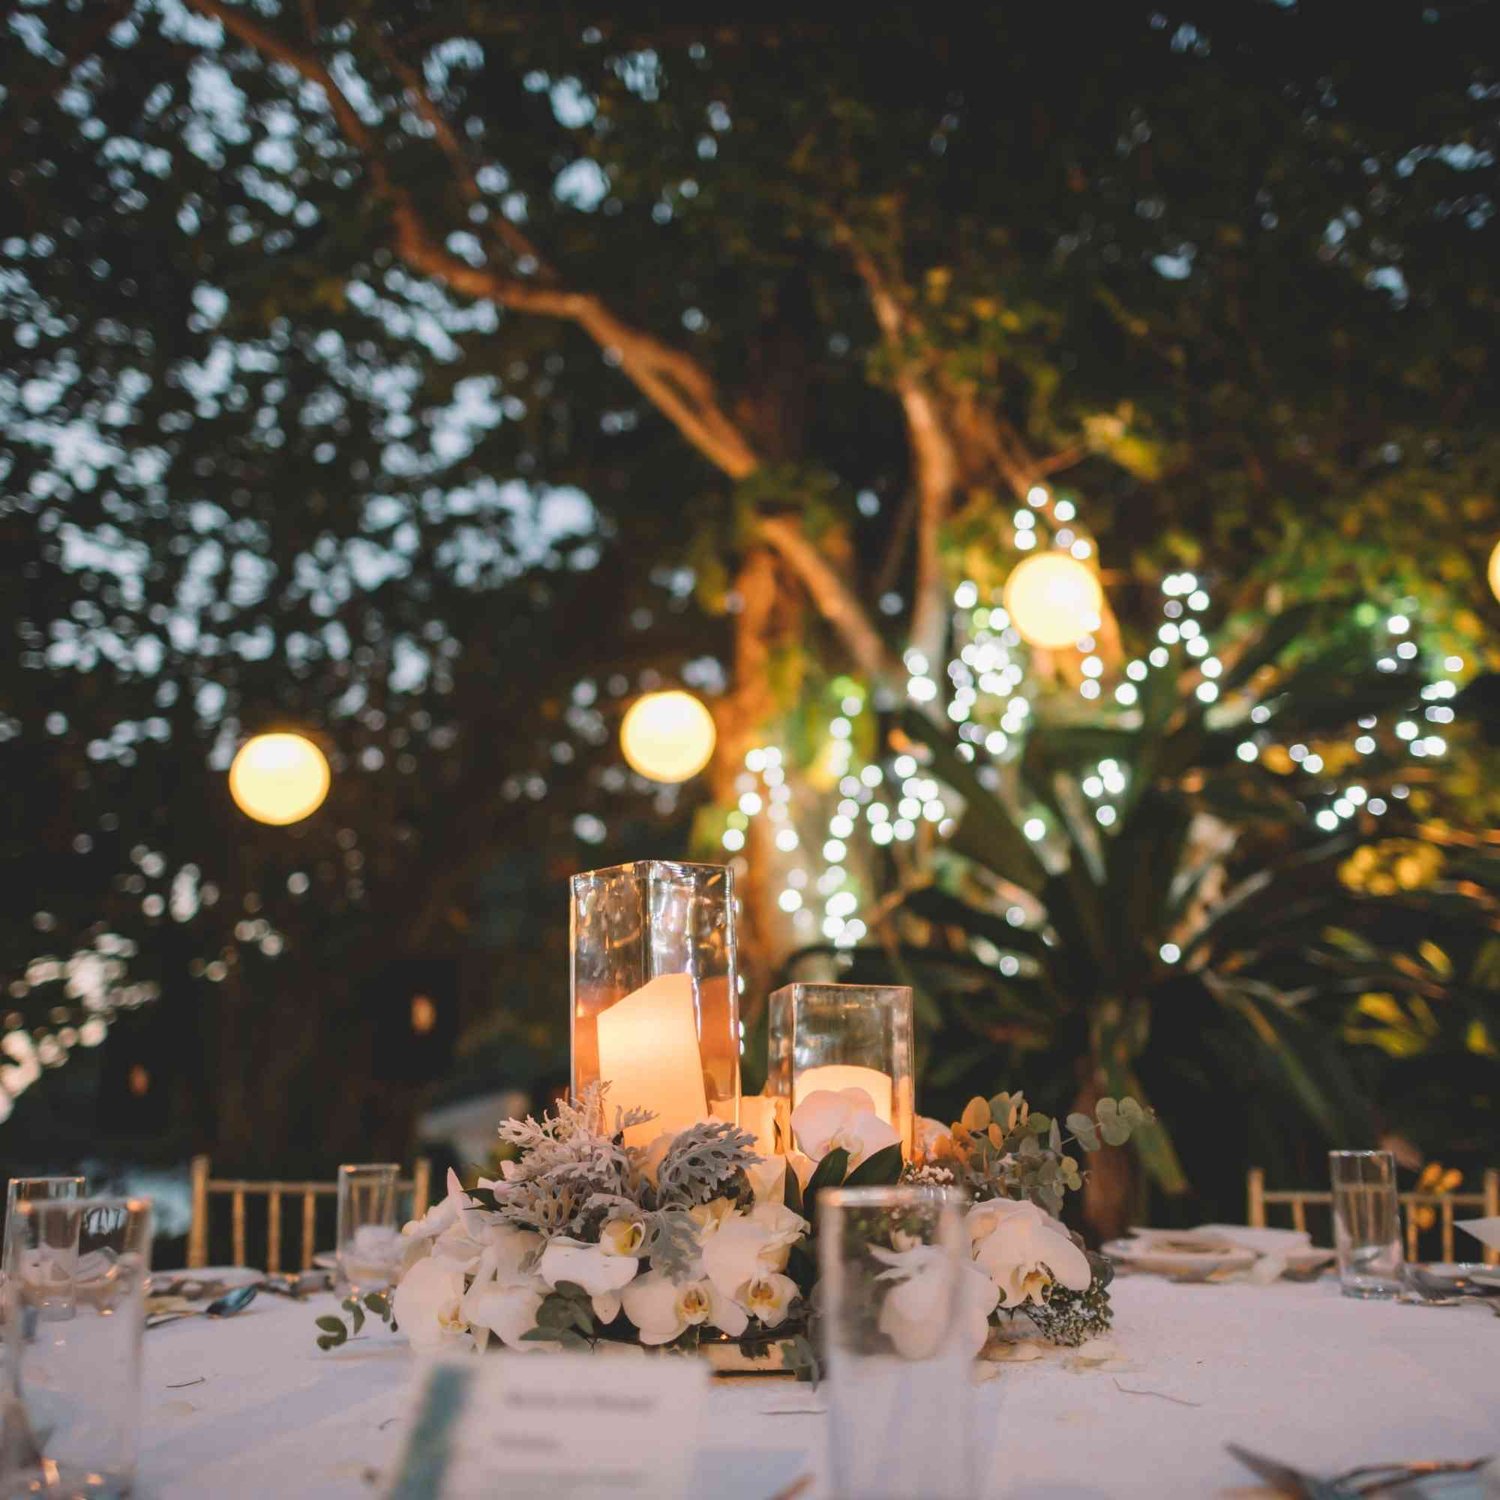 Wenn Sie eine weiße Ausstattung für Ihr Hochzeitsessen suchen, sind Sie bei uns genau richtig. Wir bieten eine Vielzahl von weißen Tischdecken, Servietten und Geschirr, die Ihrem Festmahl einen eleganten und edlen Touch verleihen. Unsere weiße Ausstattung für Hochzeitsessen sorgt für eine stilvolle Atmosphäre, die Ihre Gäste beeindrucken wird.  Für ein weißes Hochzeitsmahl bieten wir eine Auswahl an weißen Dekorationsartikeln, die Ihre Tafel in ein festliches Ambiente verwandeln. Von weißen Kerzenständern über elegante Blumenarrangements bis hin zu dekorativen Platzkartenhaltern - unsere weiße Ausstattung für Hochzeitsmahlzeiten sorgt für eine ansprechende Optik, die Ihre Gäste begeistern wird.  Planen Sie eine weiße Ausstattung für Ihre Hochzeitsparty? Wir bieten eine Vielzahl von weißen Dekorationsartikeln, die Ihre Feierlichkeit in ein traumhaftes Fest verwandeln. Von weißen Luftballons über glitzernde Girlanden bis hin zu dekorativen Tischläufern - unsere weiße Ausstattung für Hochzeitspartys schafft eine festliche Atmosphäre, die Ihre Gäste verzaubern wird.  Für eine weiße Ausstattung Ihrer Trauung bieten wir eine Auswahl an Dekorationsartikeln, die Ihre Zeremonie zu einem unvergesslichen Ereignis machen. Von weißen Blumengirlanden über elegante Bögen bis hin zu dekorativen Sitzkissen - unsere weiße Ausstattung für Trauungen sorgt für eine romantische Atmosphäre, die Ihre Liebe zelebriert.  Planen Sie eine weiße Ausstattung für Ihre Trauung im Garten? Unsere Auswahl an Dekorationsartikeln bietet Ihnen zahlreiche Möglichkeiten, Ihre Outdoor-Zeremonie stilvoll zu gestalten. Von weißen Pavillons über romantische Rosenbögen bis hin zu dekorativen Blumenarrangements - unsere weiße Ausstattung für Trauungen im Garten verleiht Ihrem besonderen Tag eine elegante Note.  Entdecken Sie unsere weiße Dekoration für Gartenhochzeiten und gestalten Sie Ihren Außenbereich ganz nach Ihren Vorstellungen. Unsere Auswahl an weißen Dekorationsartikeln bietet Ihnen zahlreiche Möglichkeiten, Ihre Gartenhochzeit stilvoll und einladend zu gestalten, während gleichzeitig eine elegante Atmosphäre geschaffen wird.  Für eine weiße Dekoration Ihrer Gartenparty bieten wir eine breite Palette von Dekorationsartikeln, die Ihren Außenbereich in ein festliches Ambiente verwandeln. Von weißen Lampions über elegante Lichterketten bis hin zu dekorativen Tischdekorationen - unsere weiße Dekoration für Gartenpartys lässt Ihre Feierlichkeit strahlen und sorgt für eine unvergessliche Party.  Wenn Sie nach einer weißen Dekoration für Ihre Hochzeit suchen, sind Sie bei uns genau richtig. Wir bieten eine Vielzahl von weißen Dekorationsartikeln, die Ihren Hochzeitstag verschönern und eine elegante Atmosphäre schaffen. Von weißen Blumenarrangements über stilvolle Kerzenleuchter bis hin zu dekorativen Tischläufern - unsere weiße Dekoration lässt Ihre Hochzeit stilvoll und ansprechend wirken.  Für eine weiße Dekoration Ihrer Hochzeitsmahlzeit bieten wir eine breite Palette von Dekorationsartikeln, die Ihren Speisesaal in eine elegante Kulisse verwandeln. Von weißen Tischdecken über glänzende Kerzenständer bis hin zu dekorativen Serviettenringen - unsere weiße Dekoration für Hochzeitsmahlzeiten sorgt für eine ansprechende Optik, die Ihre Gäste beeindrucken wird.